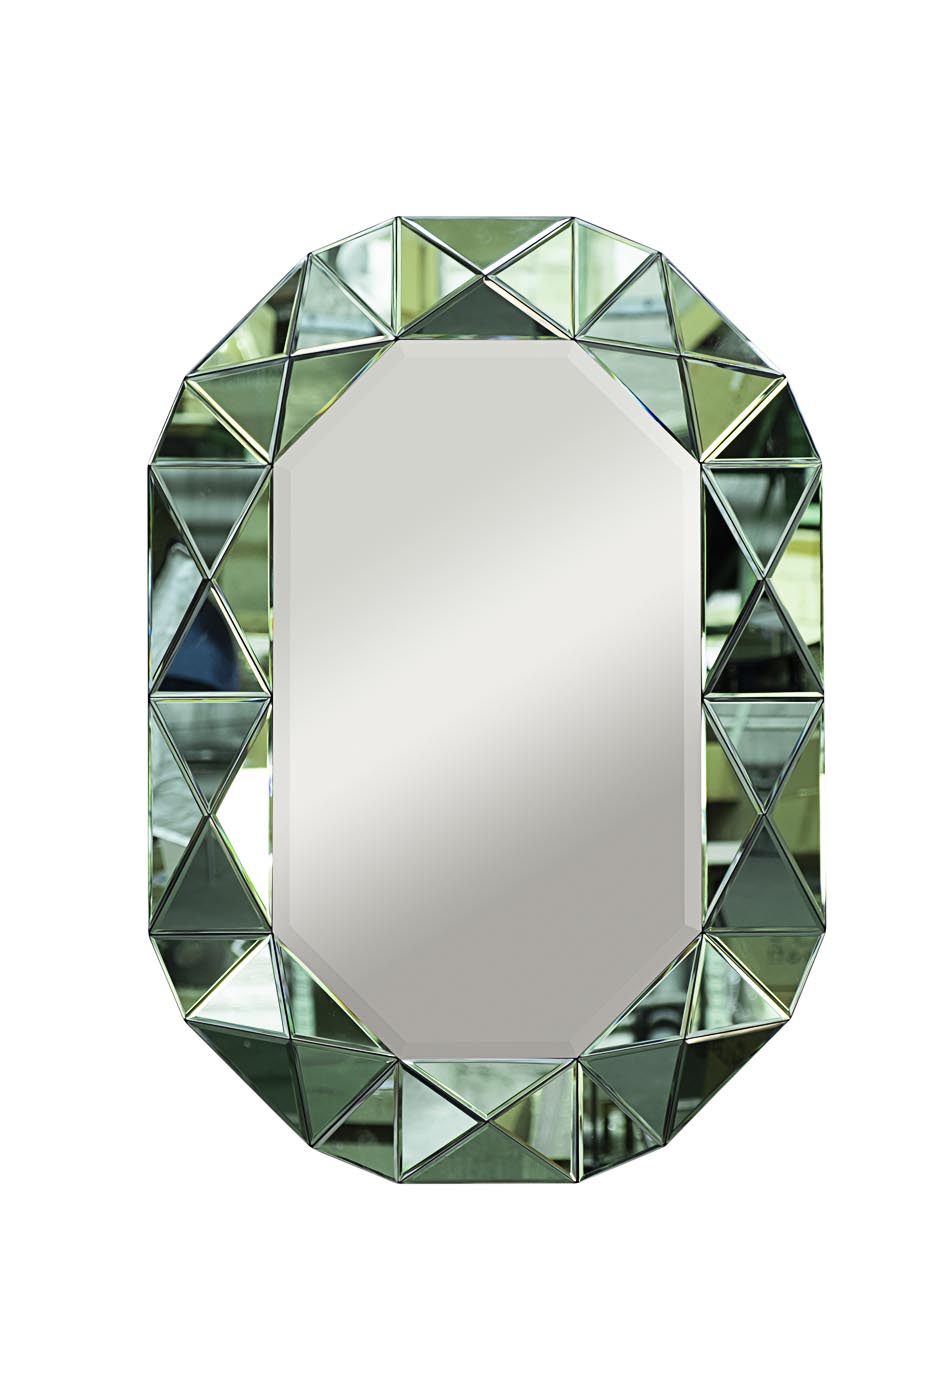 Зеркало в зеленой зеркальной раме KFG079